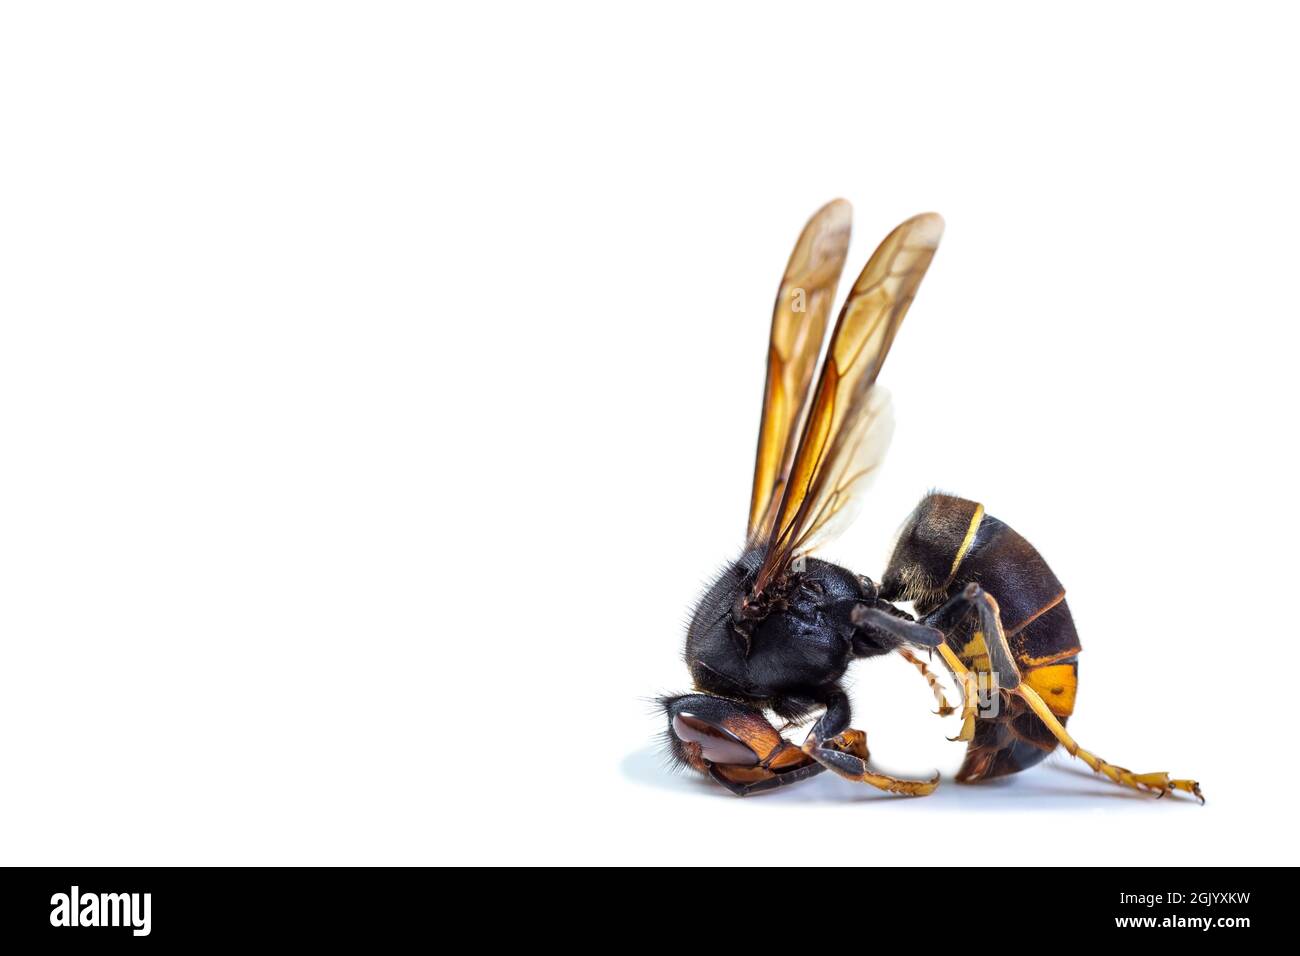 Dead asian hornet. Concept of danger in nature. Stock Photo